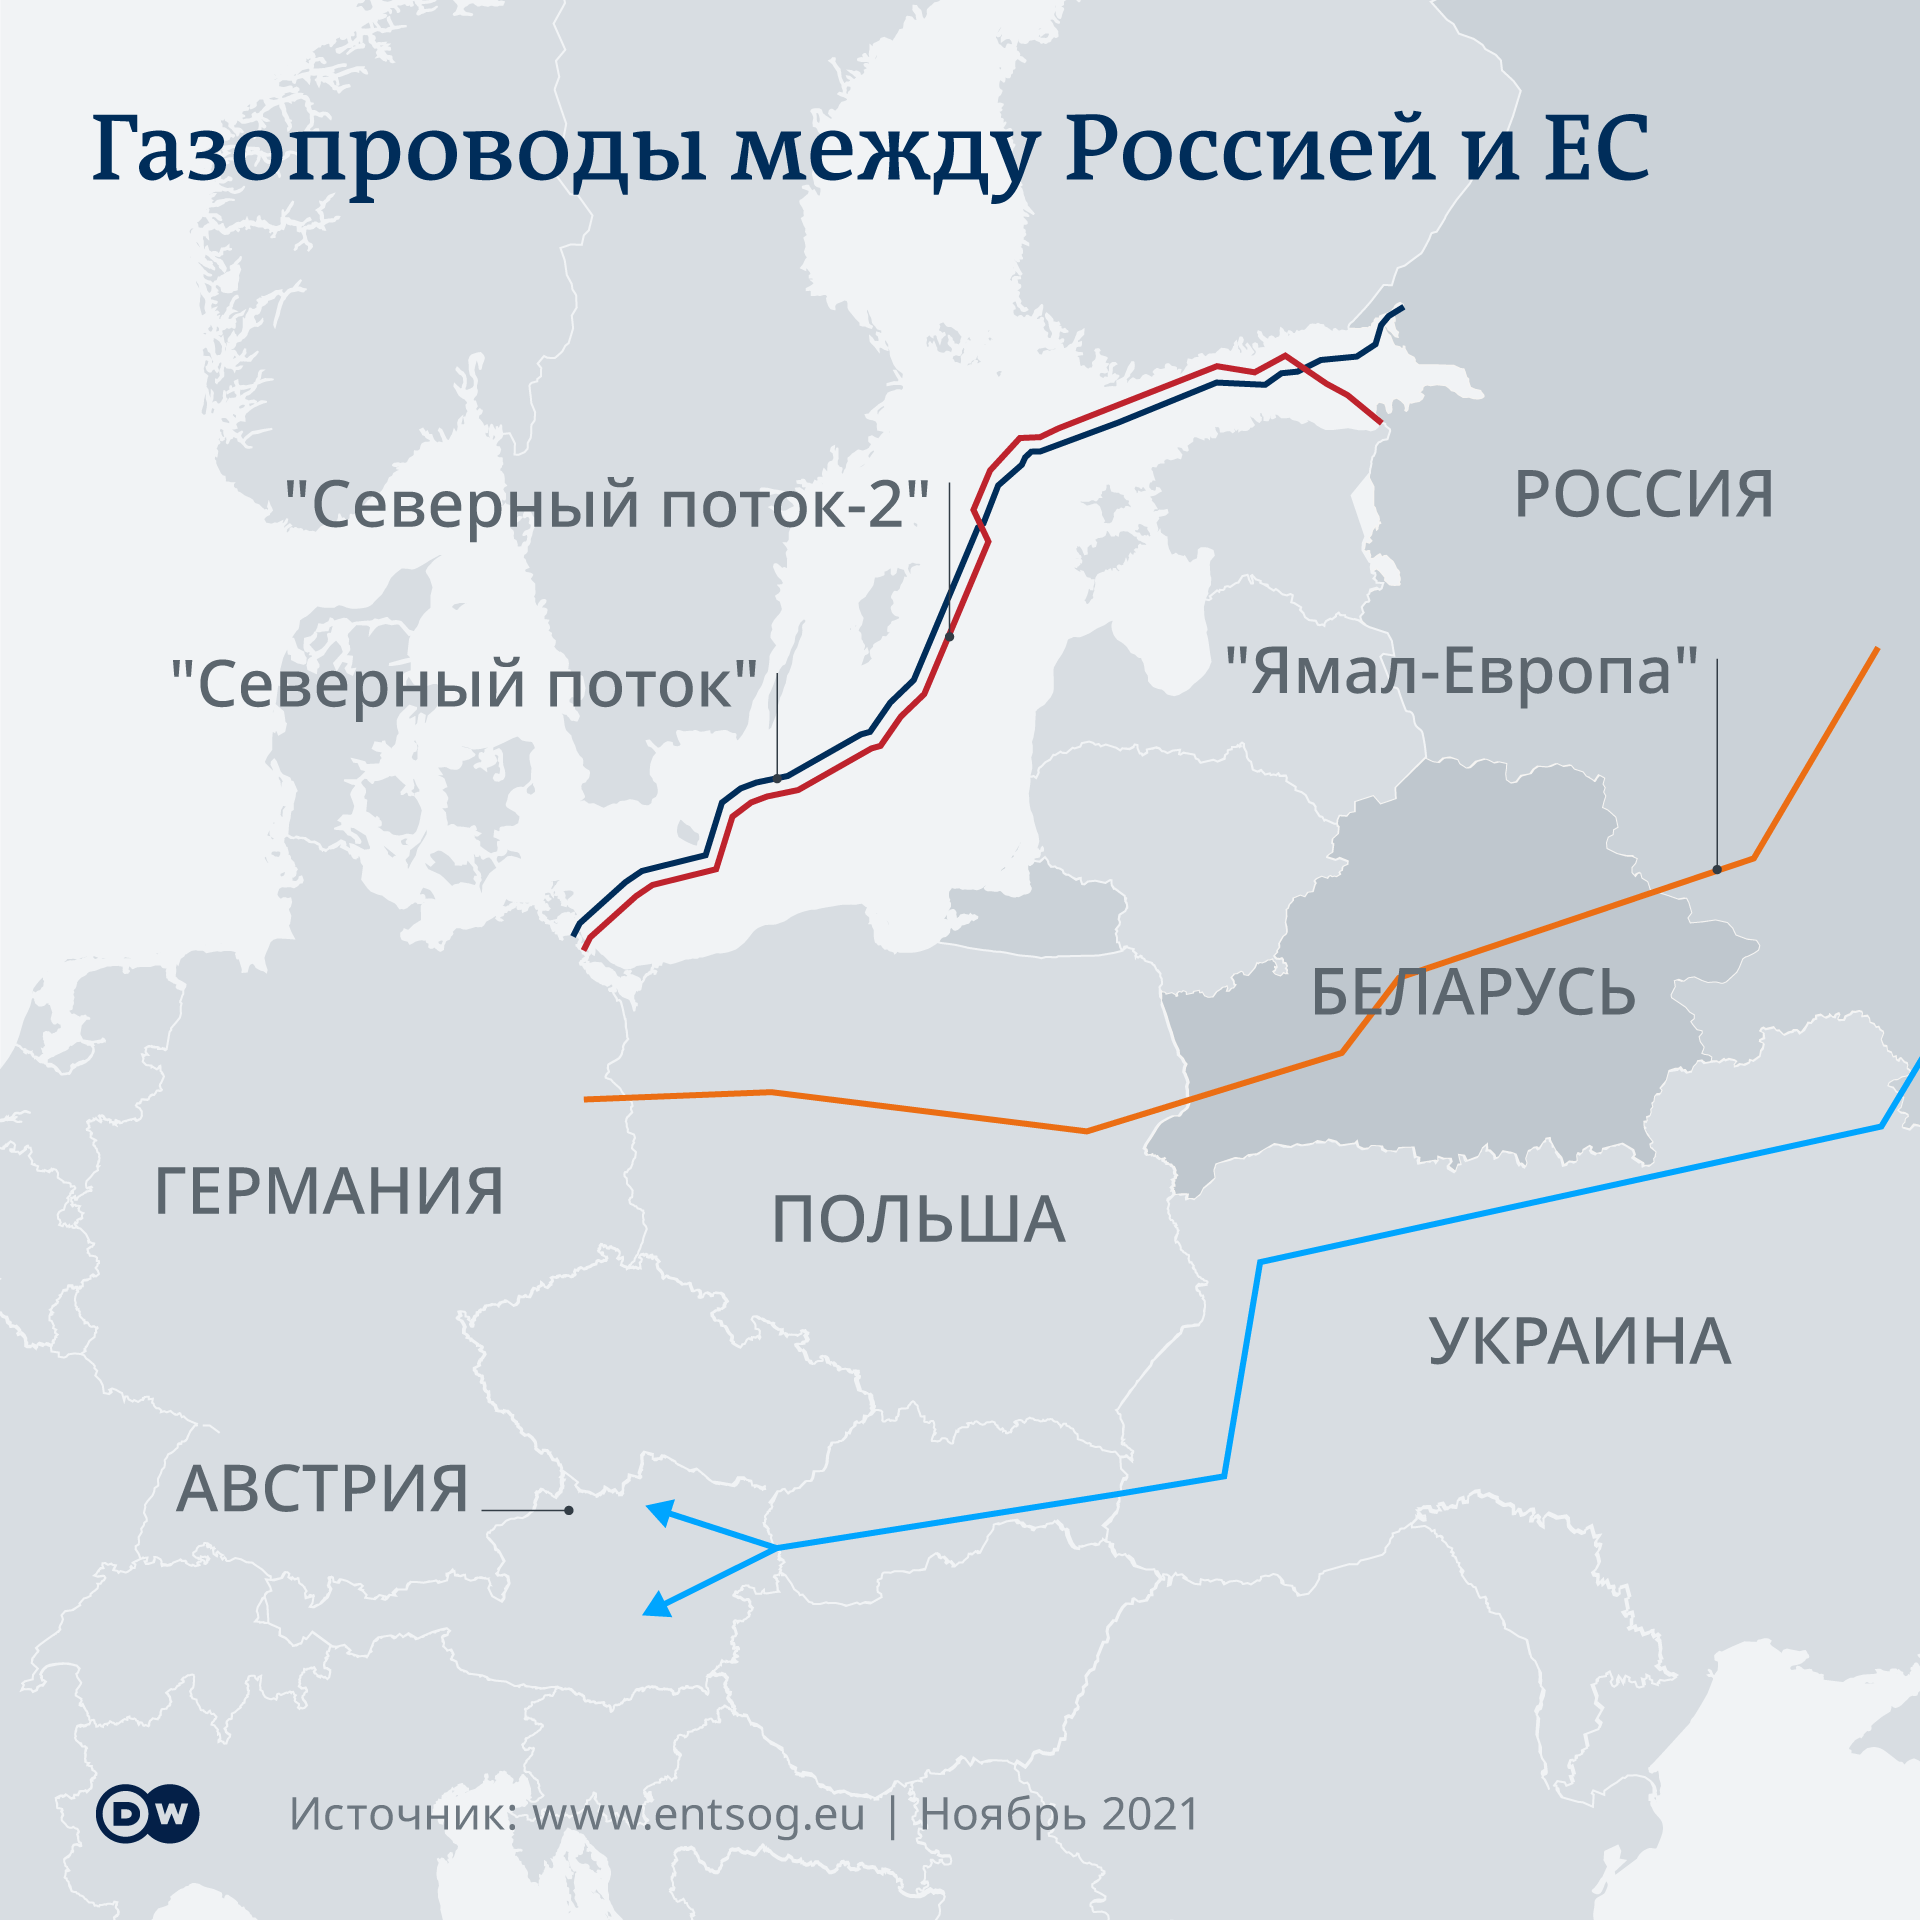 Инфографика Газопроводы между Россией и ЕС